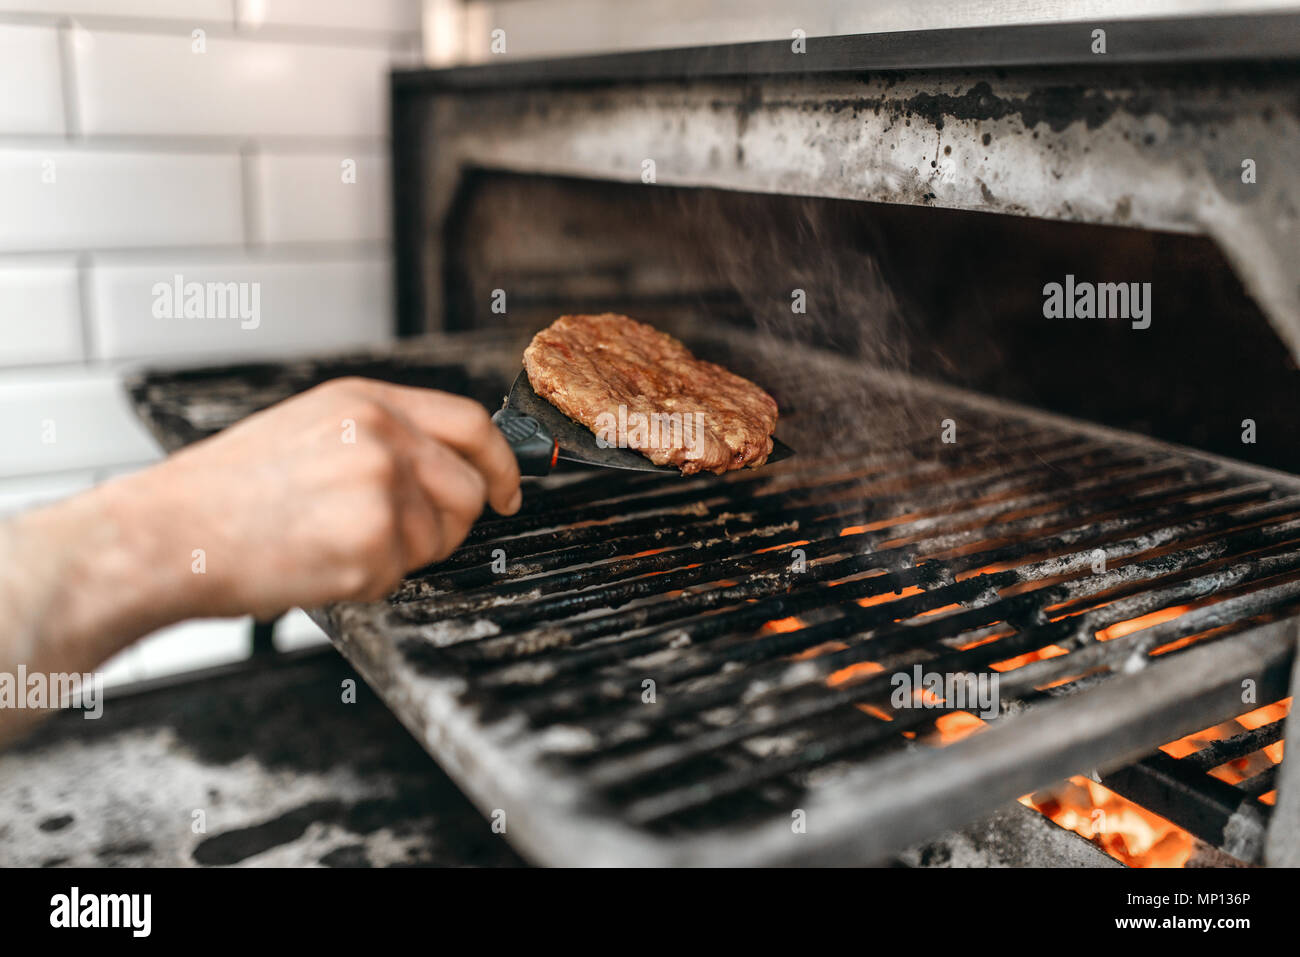 Kochen Hände bereitet smoky Fleisch am Grill Backofen, Burger Kochen.  Hamburger Vorbereitung, Fast Food, bbq Stockfotografie - Alamy